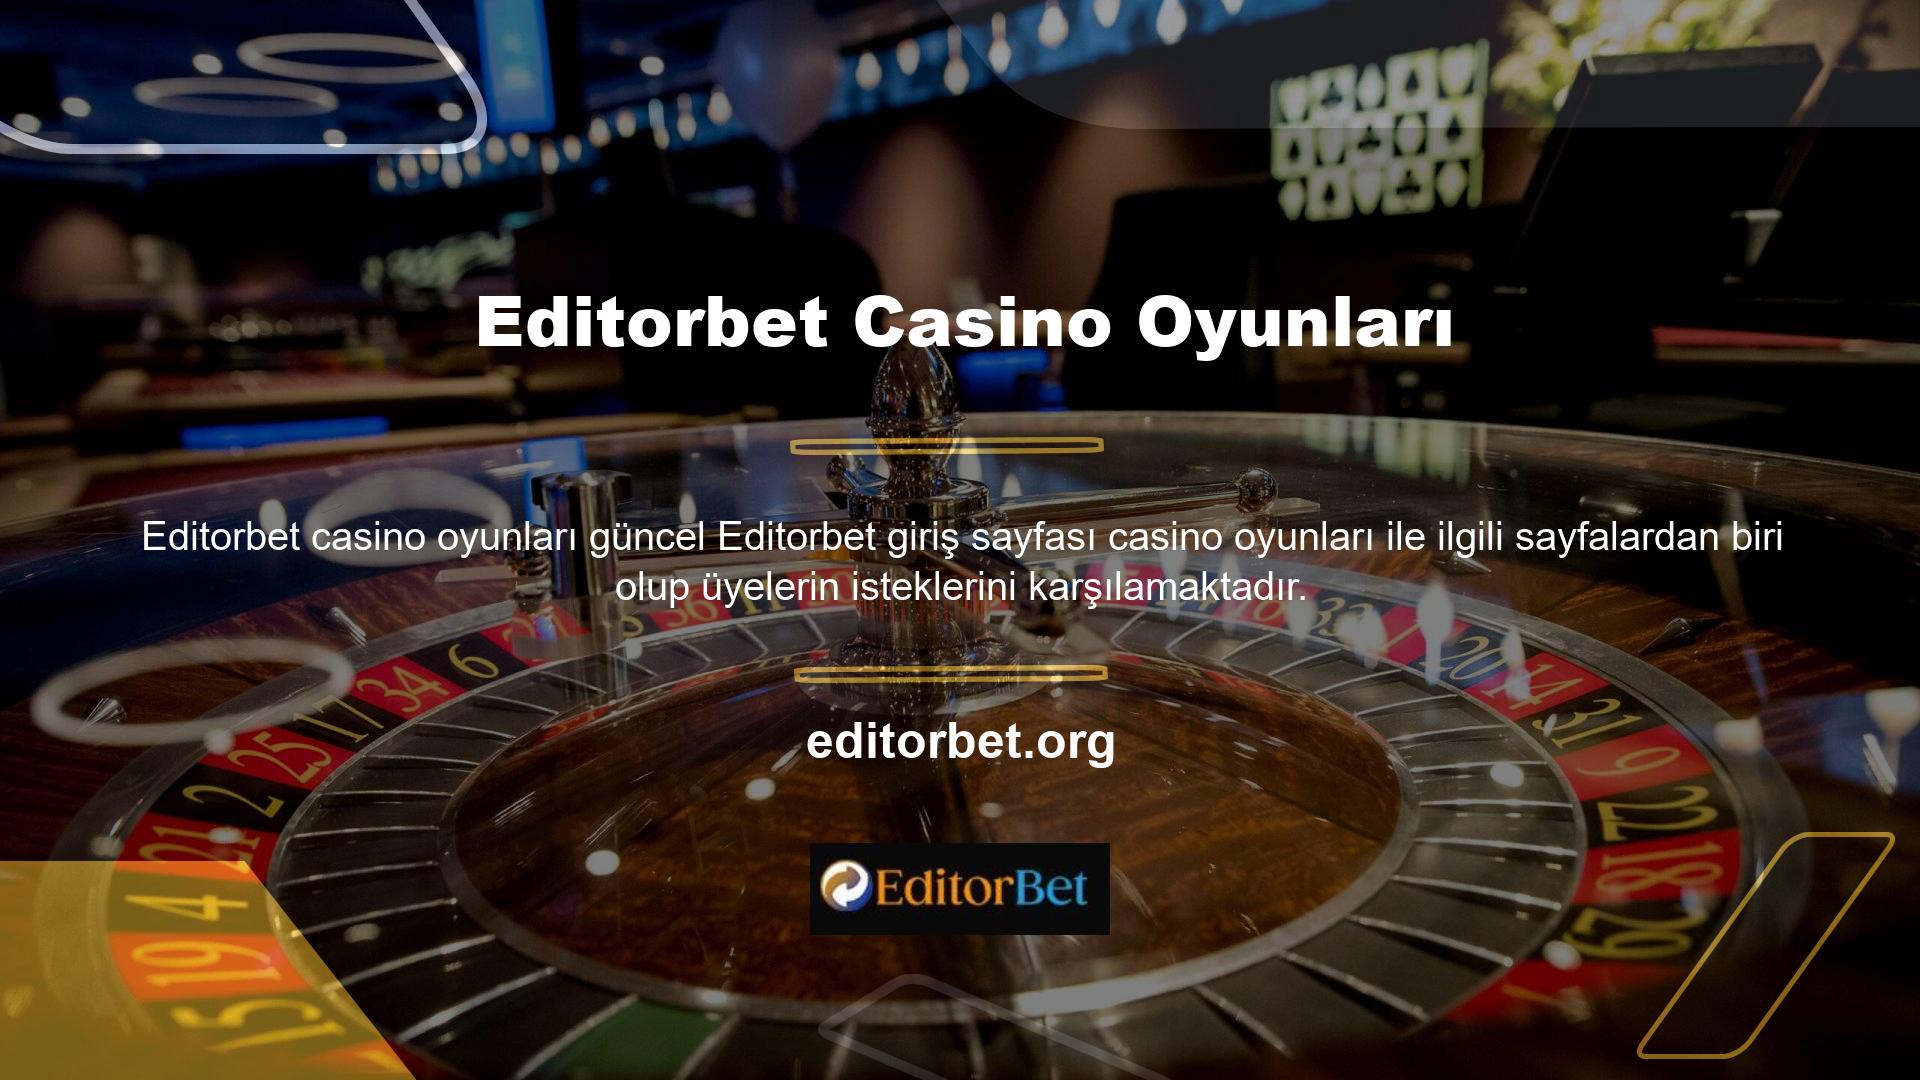 Editorbet mevcut giriş adresi, üye beklentilerini karşılamanın bir yolu, ücretsiz casino oyunlarıdır